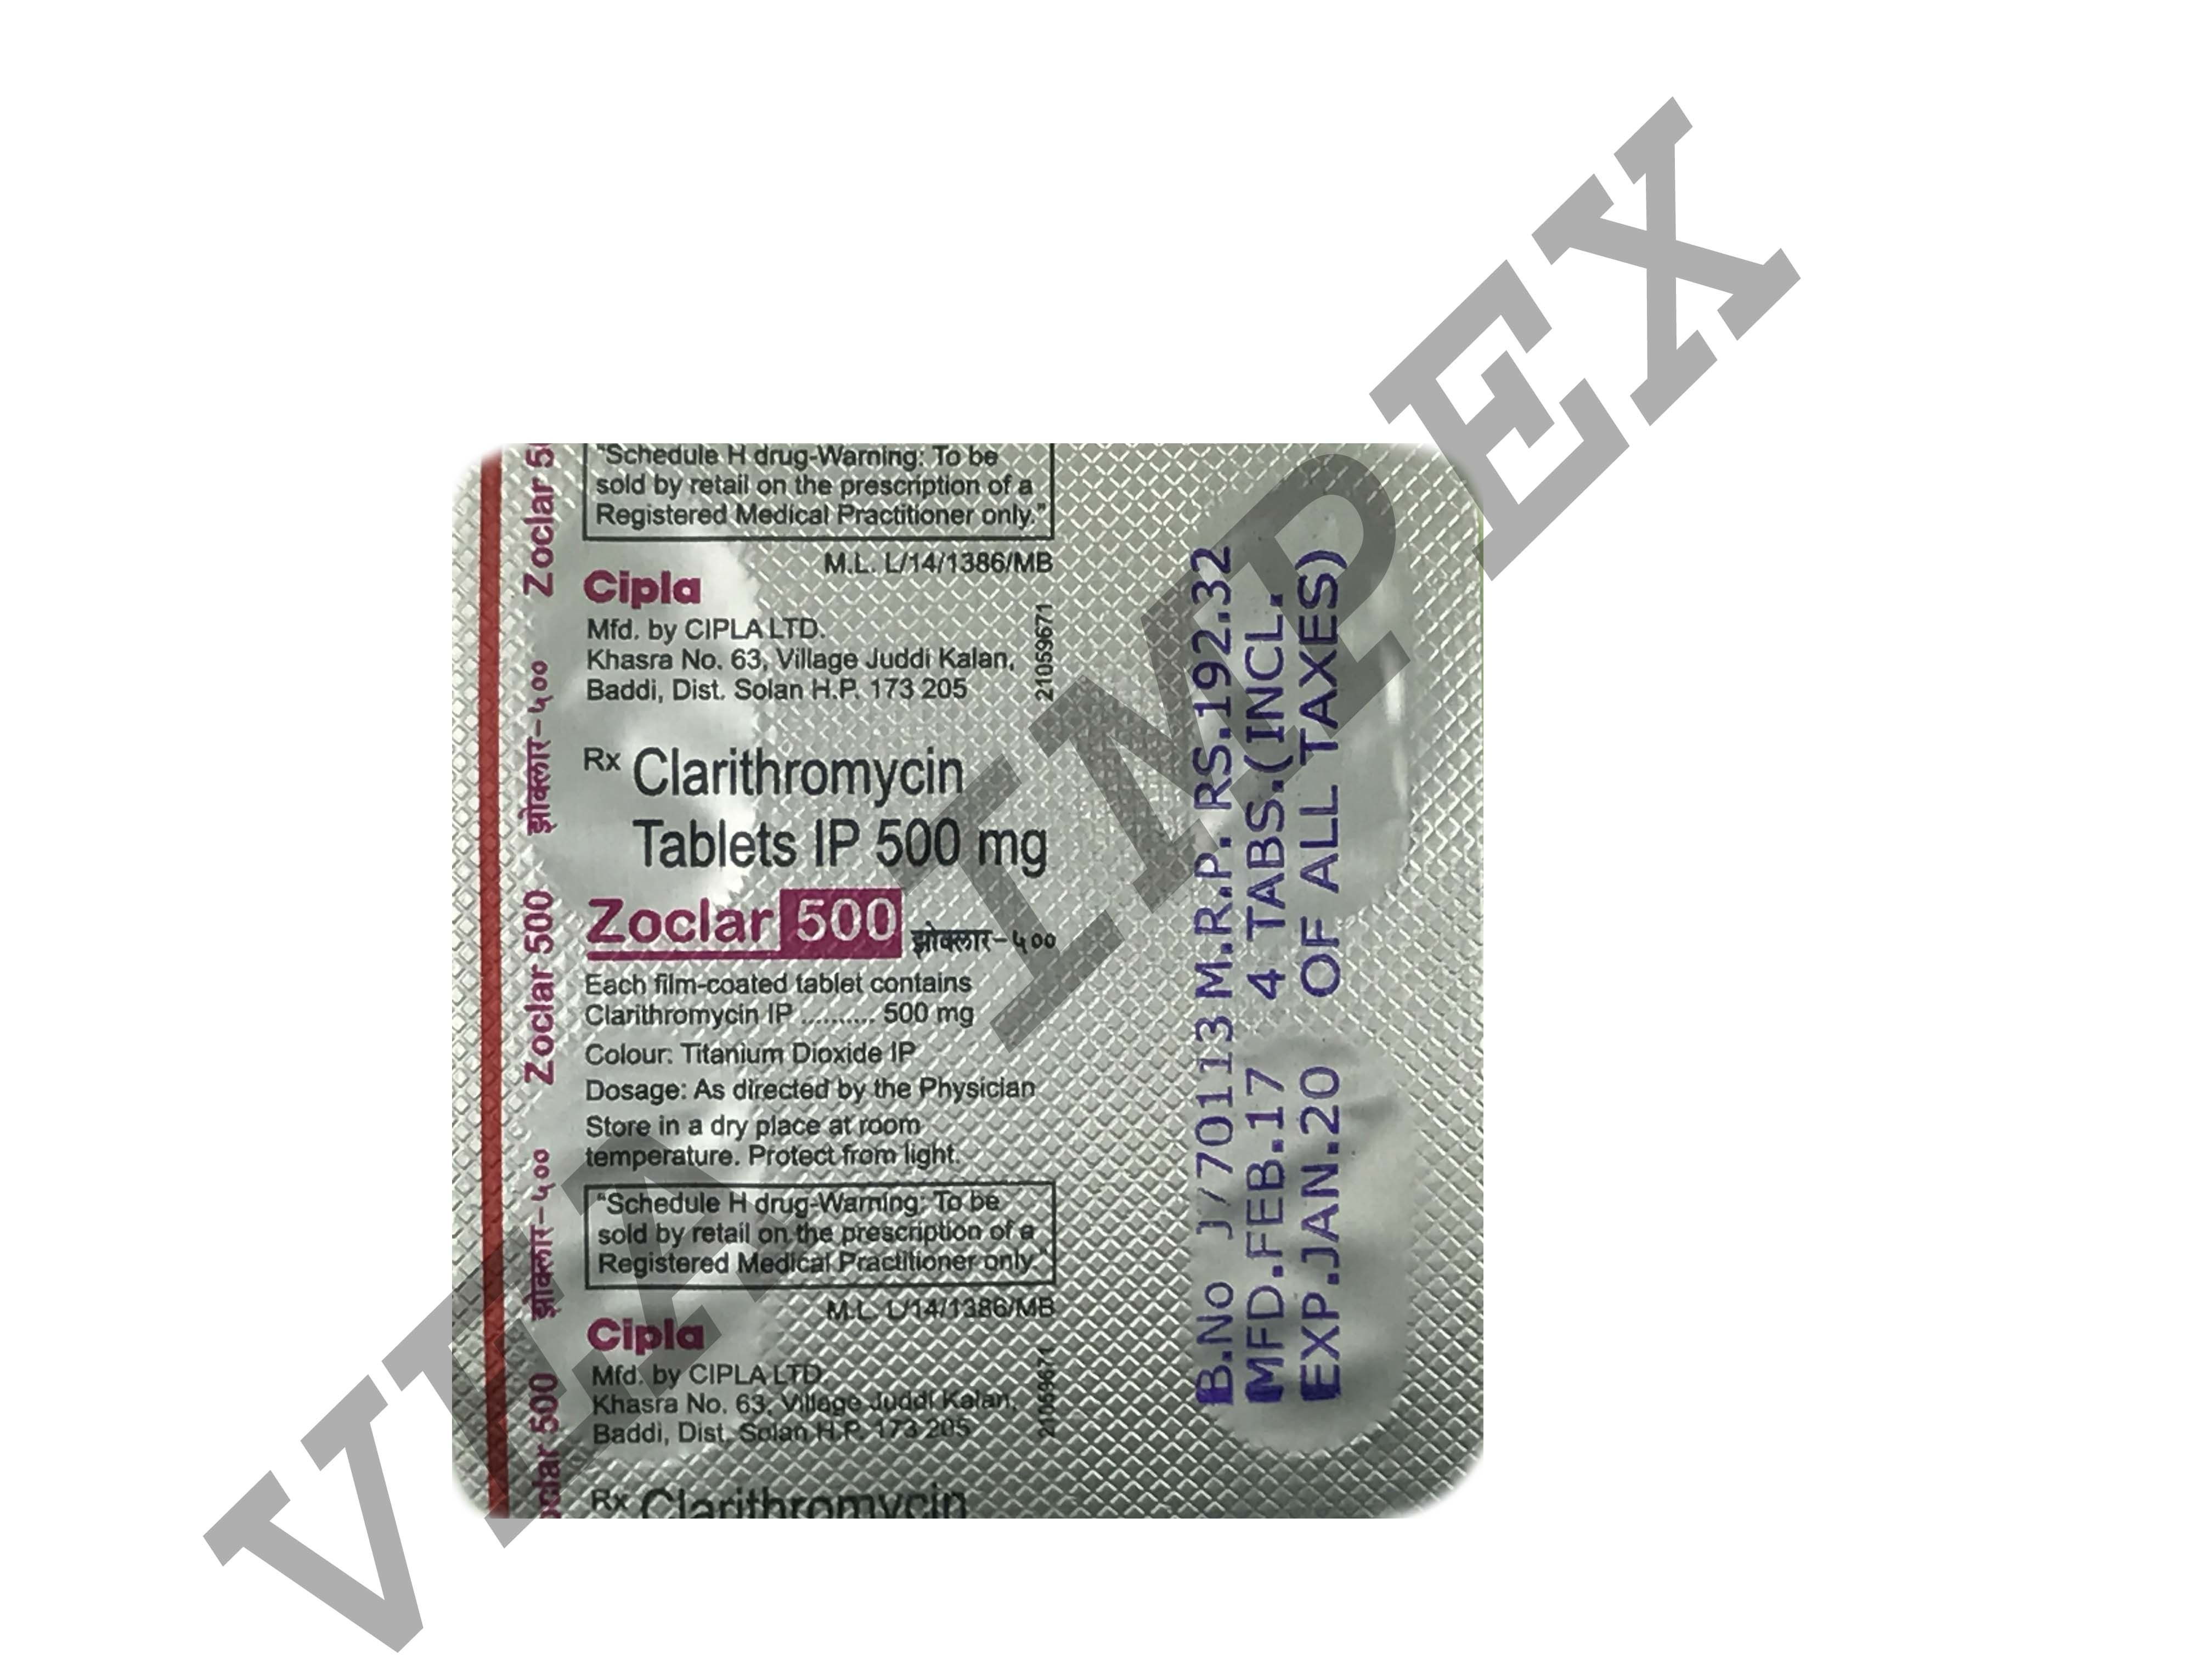 Zoclar Clarithromycin 500 mg Tablets